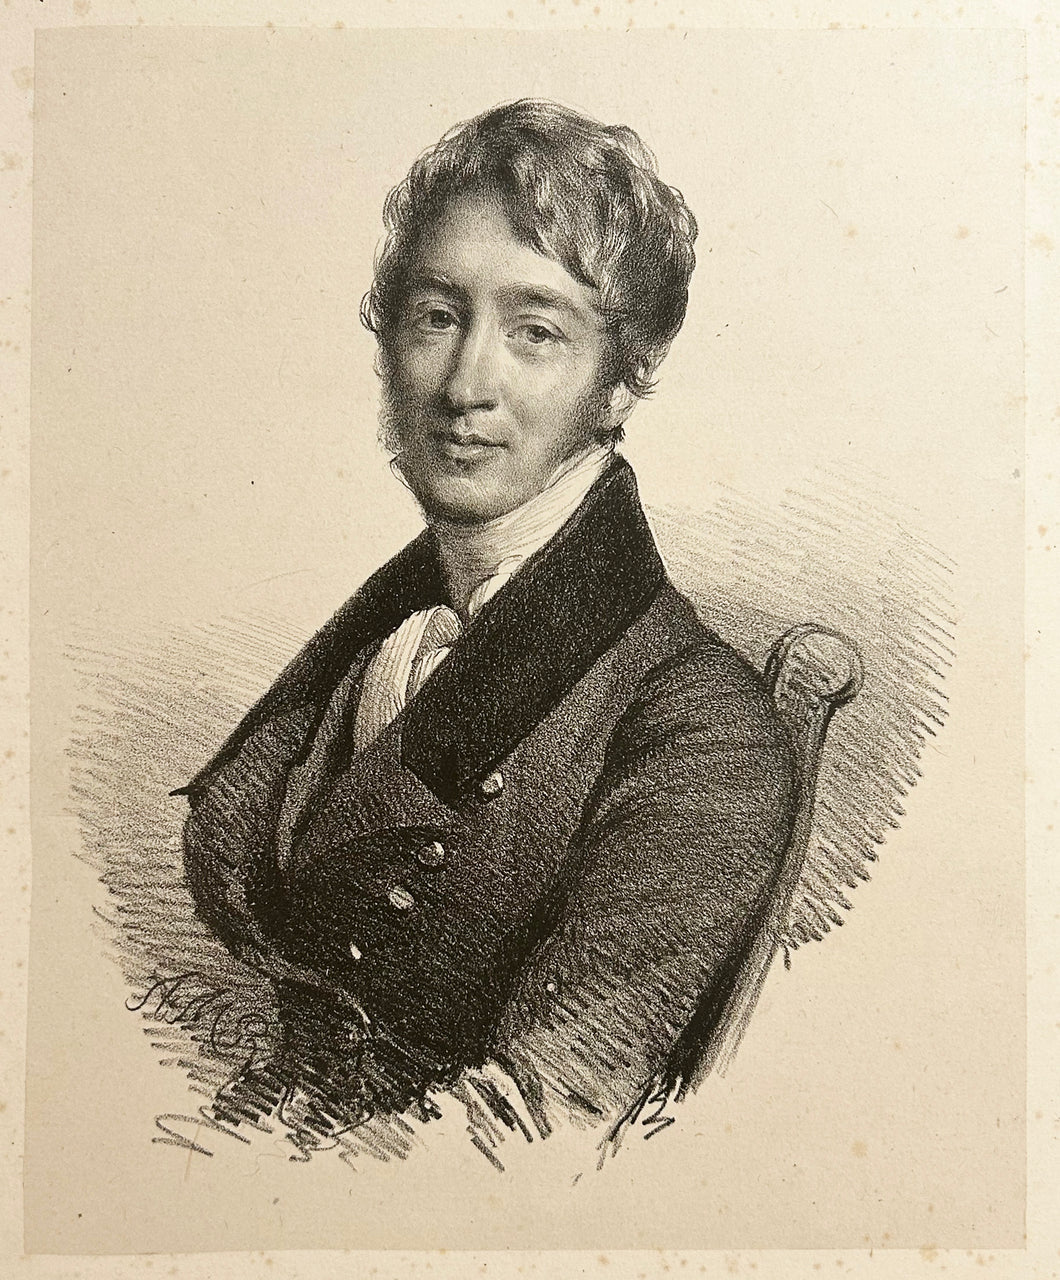 Portrait de Godefroy Engelmann (1788-1839), imprimeur lithographe, peintre et dessinateur.  c.1820.